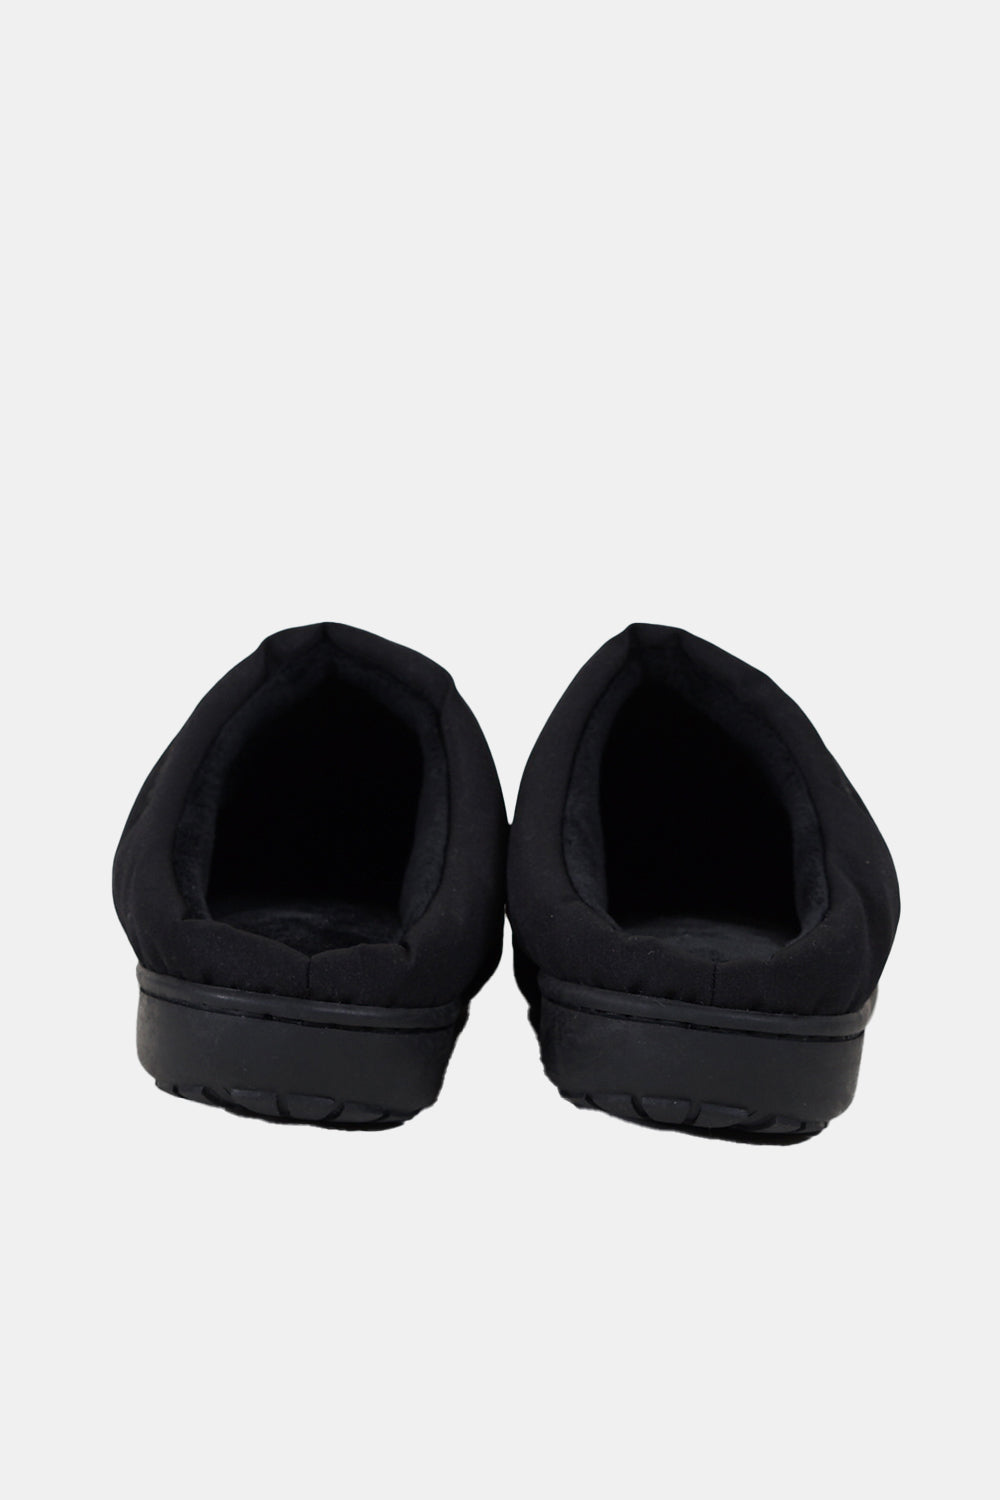 SUBU Indoor Outdoor Nannen Slippers (Black) | Number Six